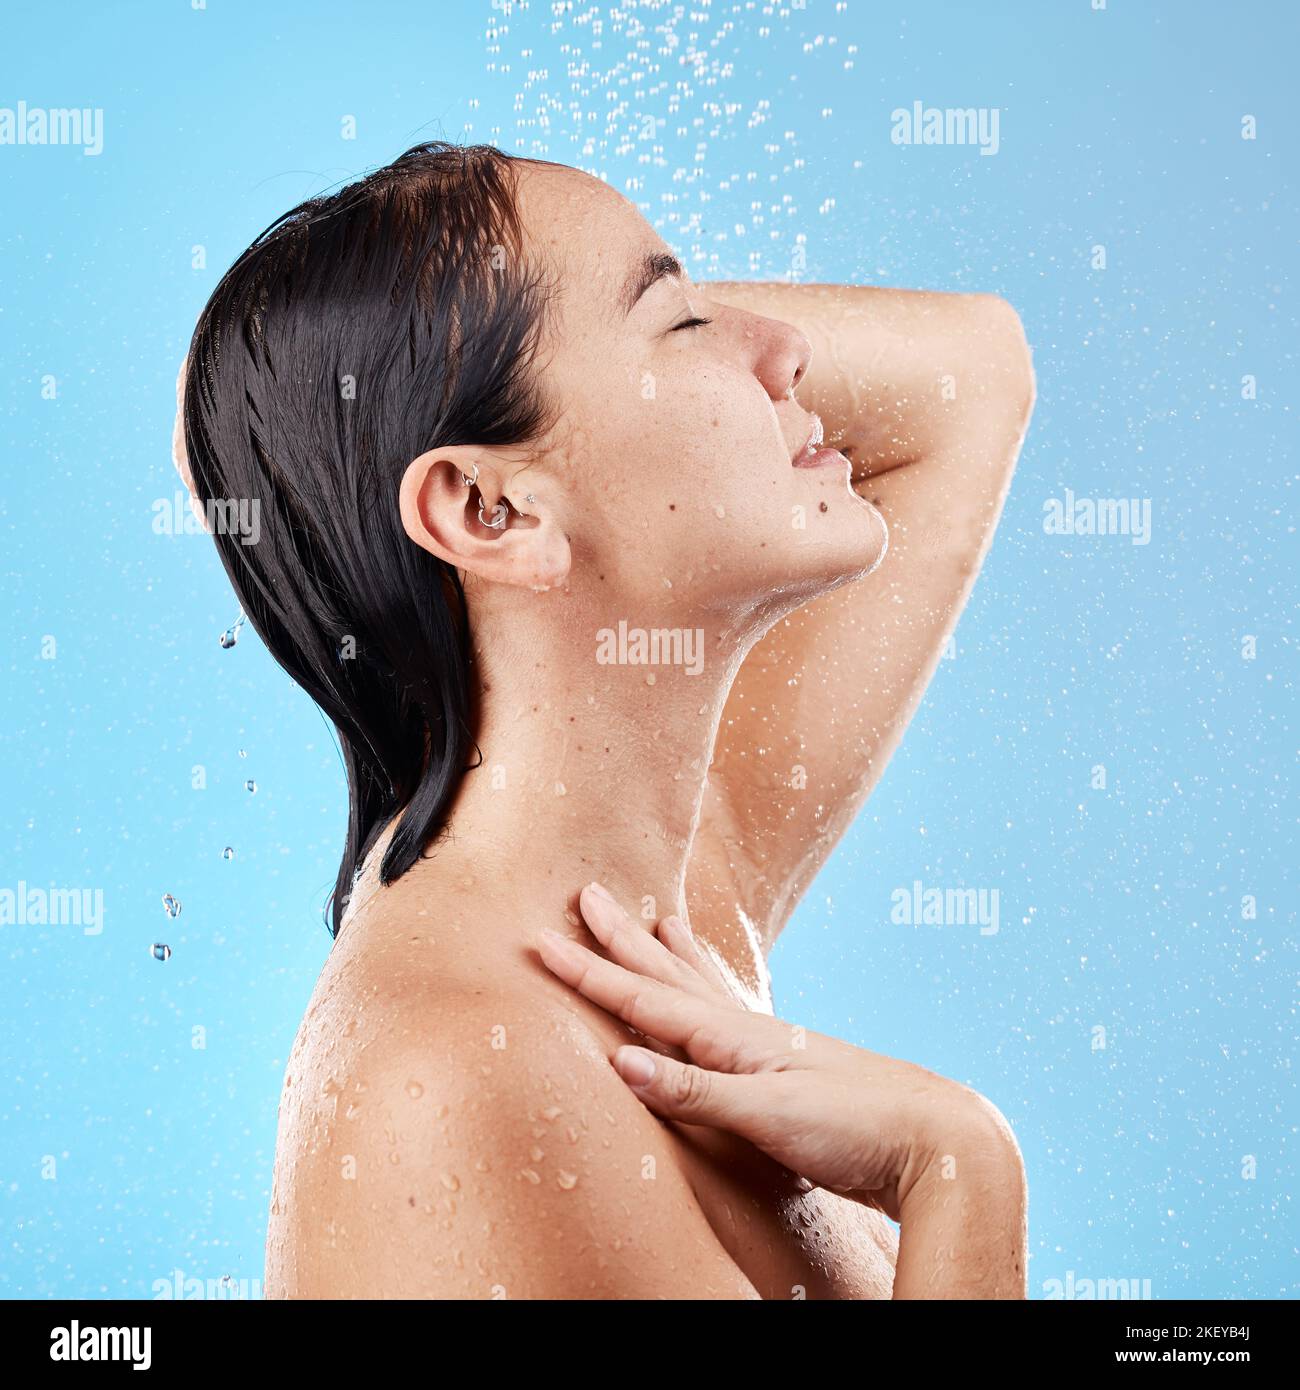 Frau, Dusche und Hautpflege Hydratation für die Hygiene, waschen oder reinigen vor einem blauen Studio Hintergrund. Weibliche entspannen in Zufriedenheit für Wasser, Schönheit und Stockfoto